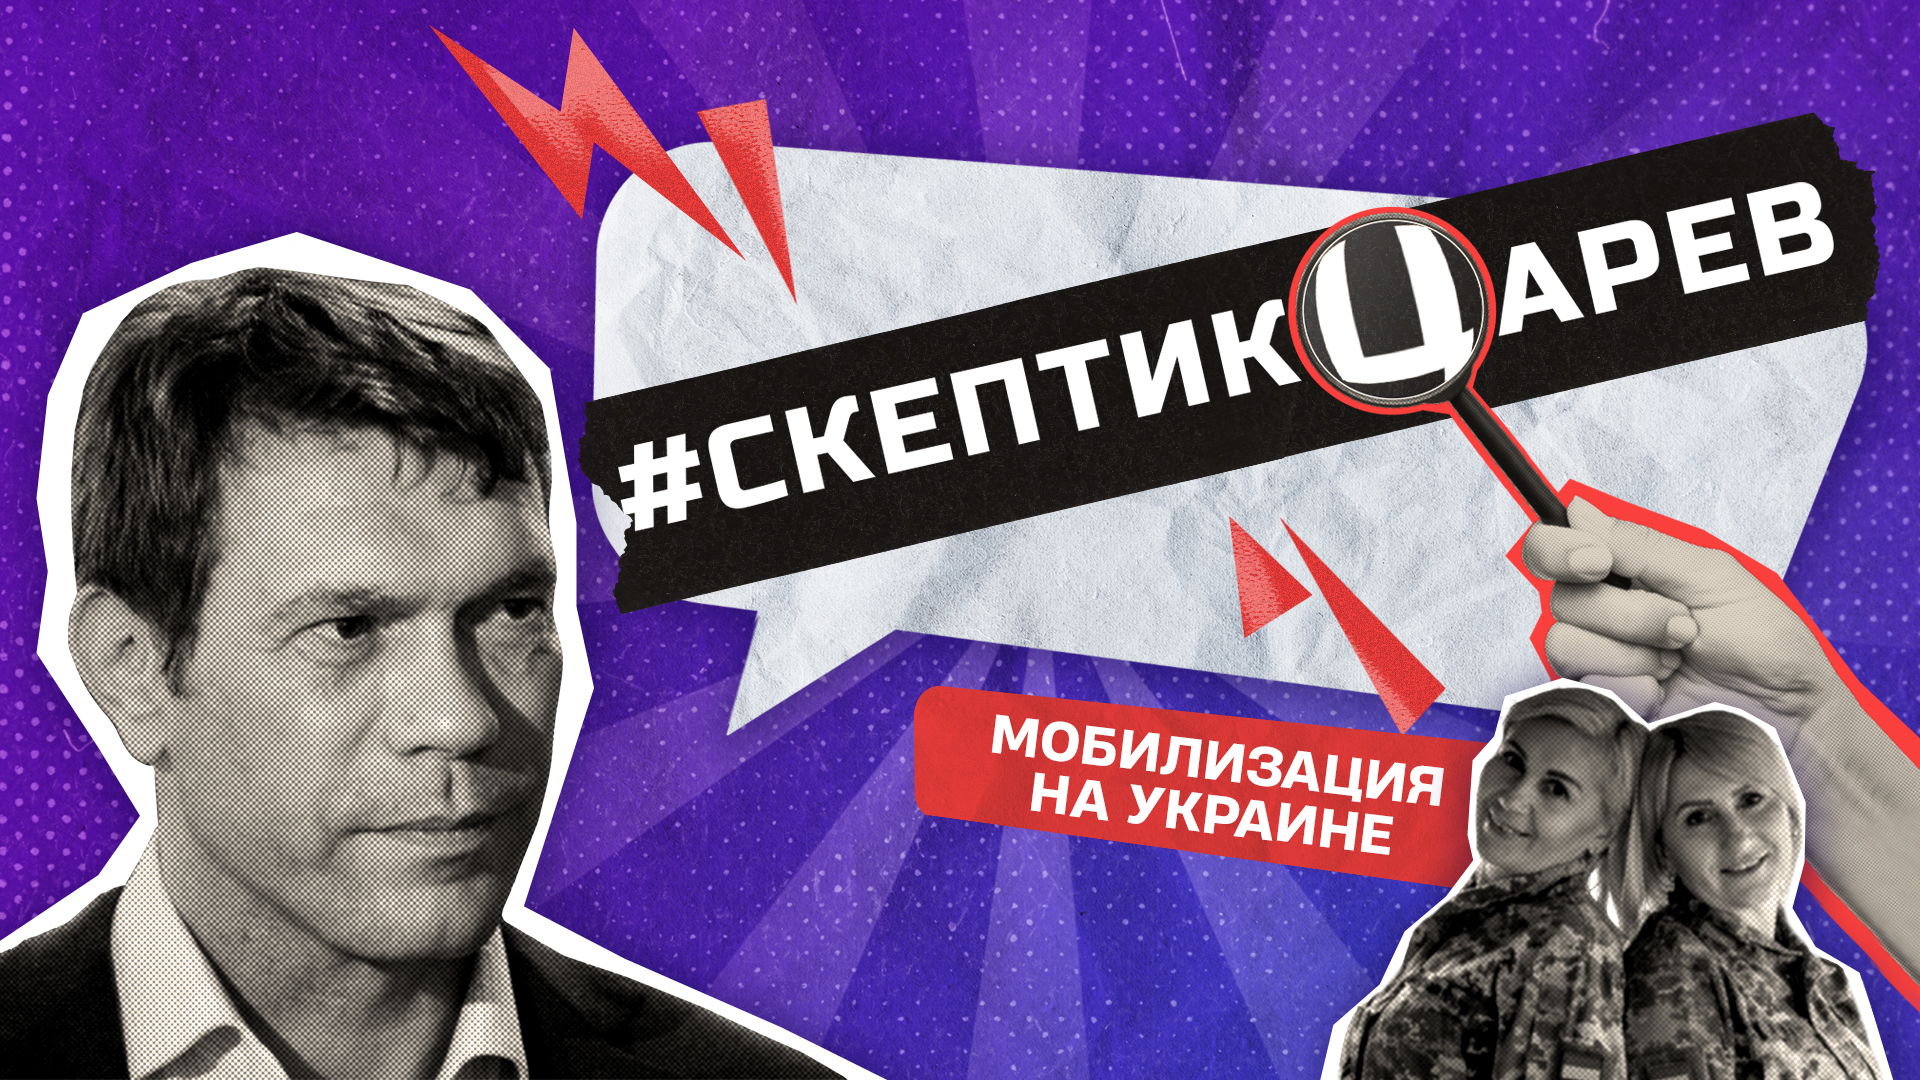 Мобилизации на Украине / Cкептикцарев / Телега Online